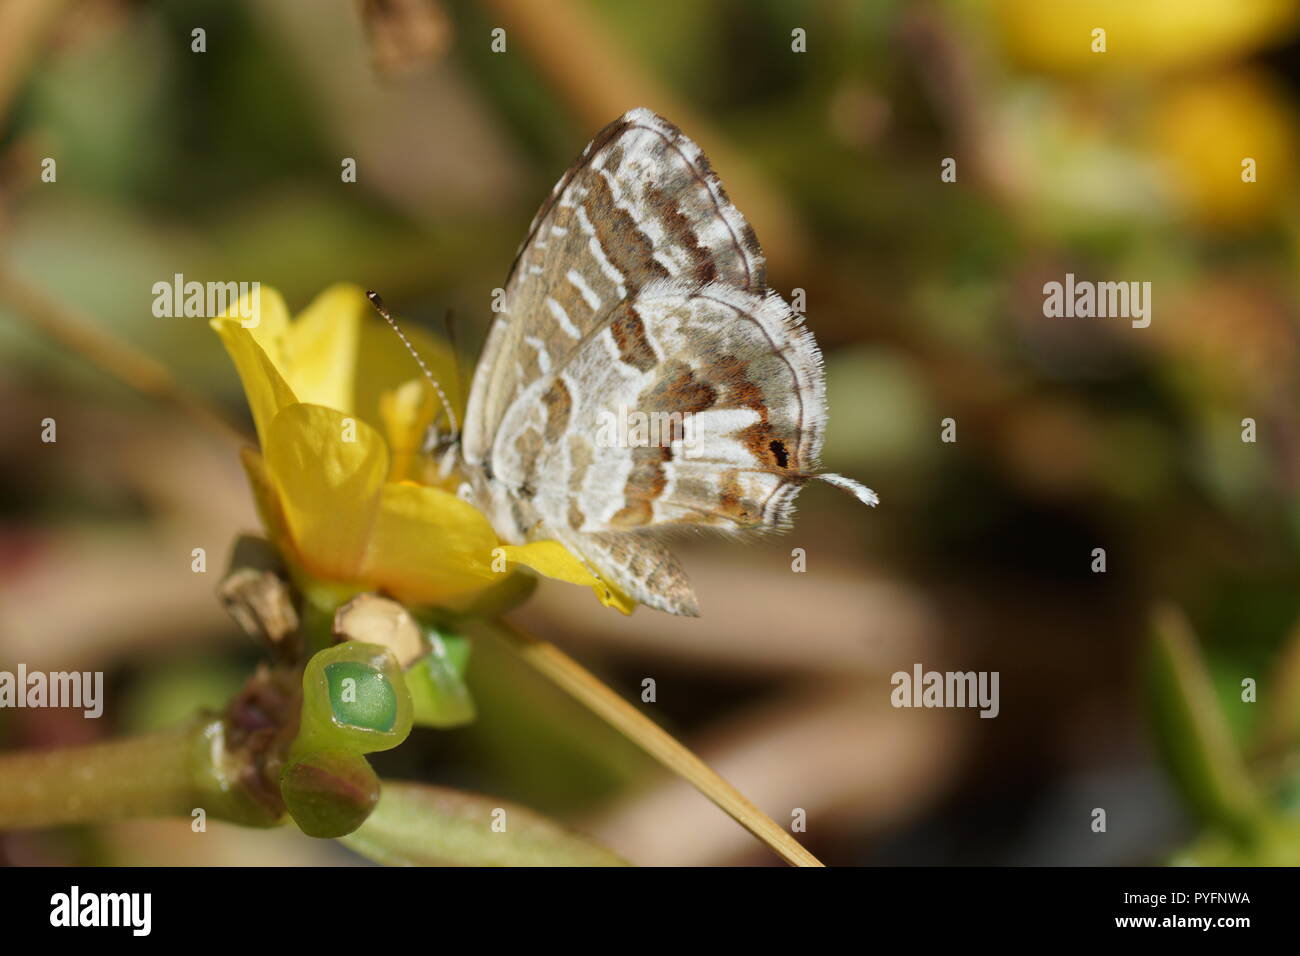 Mariposa sobre la flor. El geranio bronce o brun des pelargonios (Cacyreus marshalli), es una mariposa de la familia Lycaenidae. Foto de stock